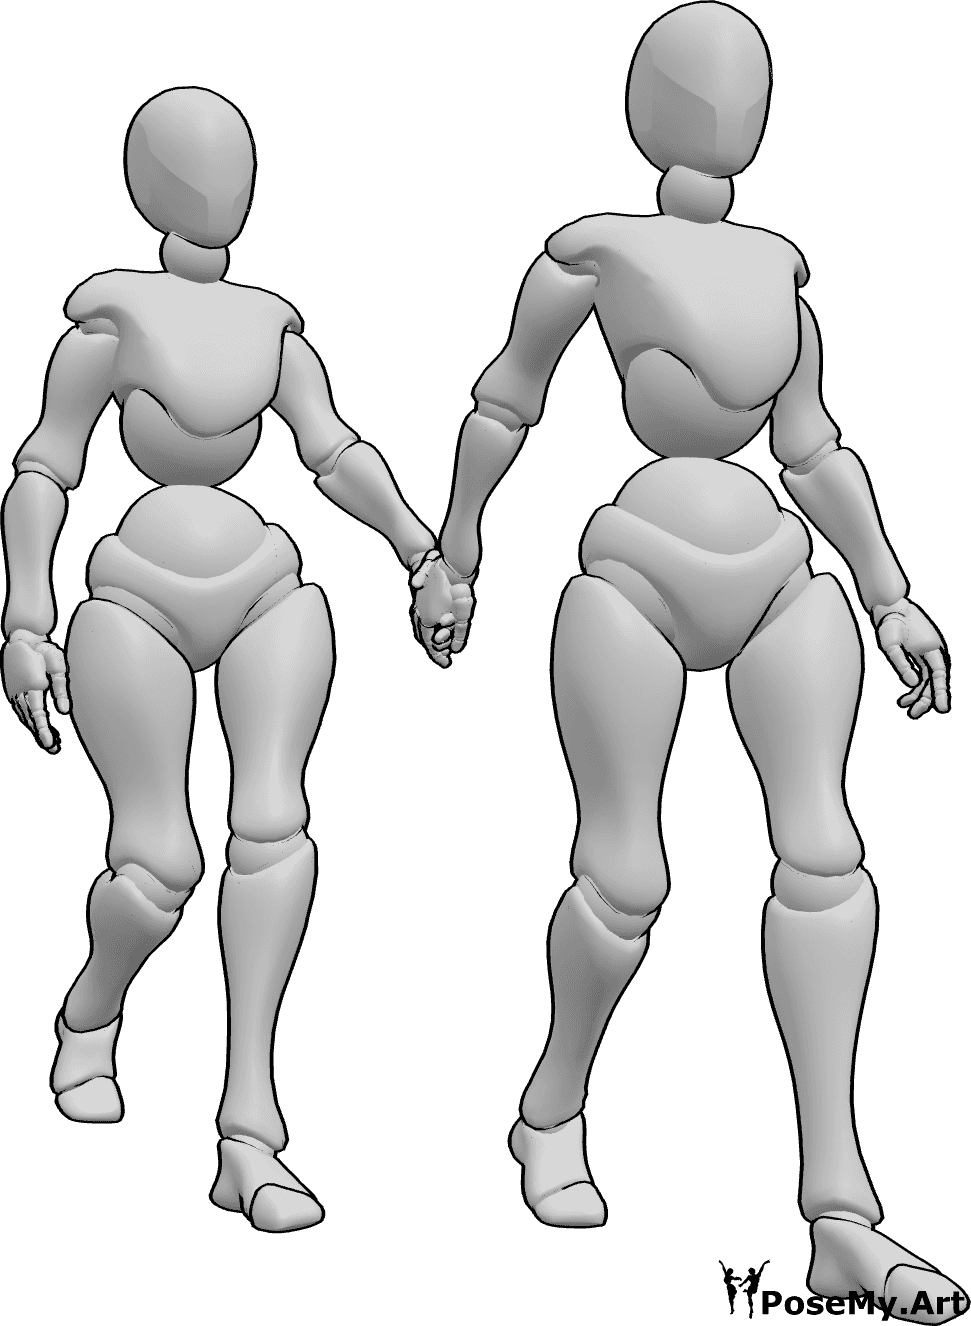 Référence des poses- Pose de deux femmes marchant - Deux femmes marchent main dans la main, l'une tenant la main de l'autre et ouvrant la voie.